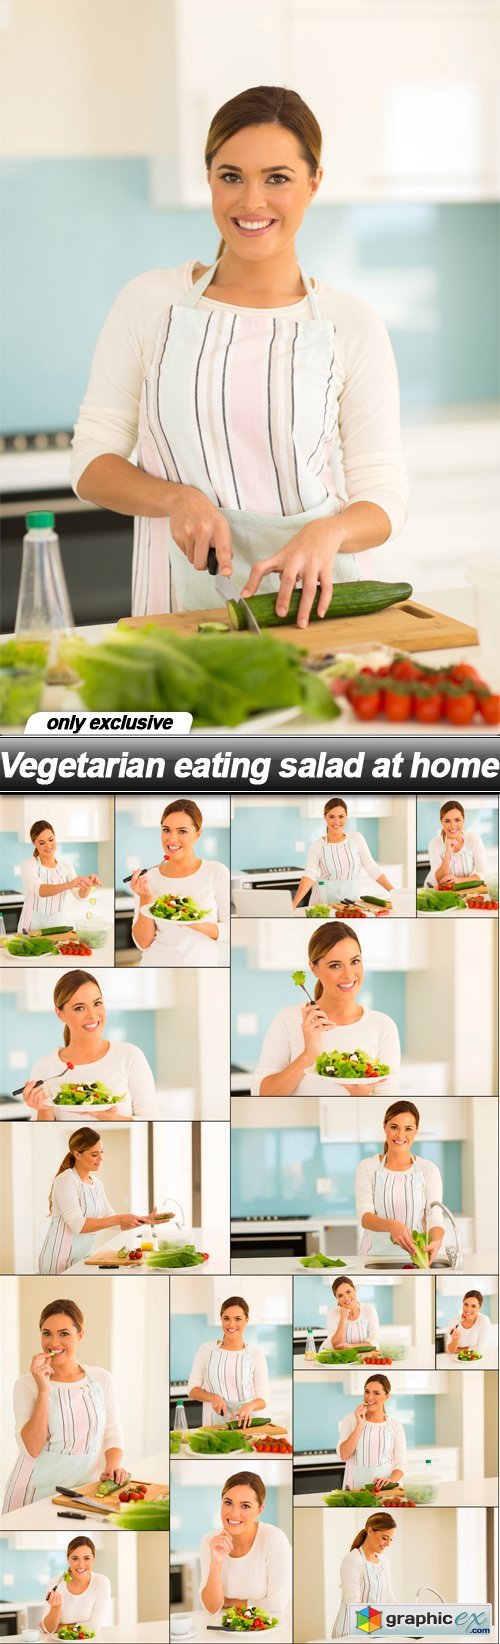 Vegetarian eating salad at home - 16 UHQ JPEG